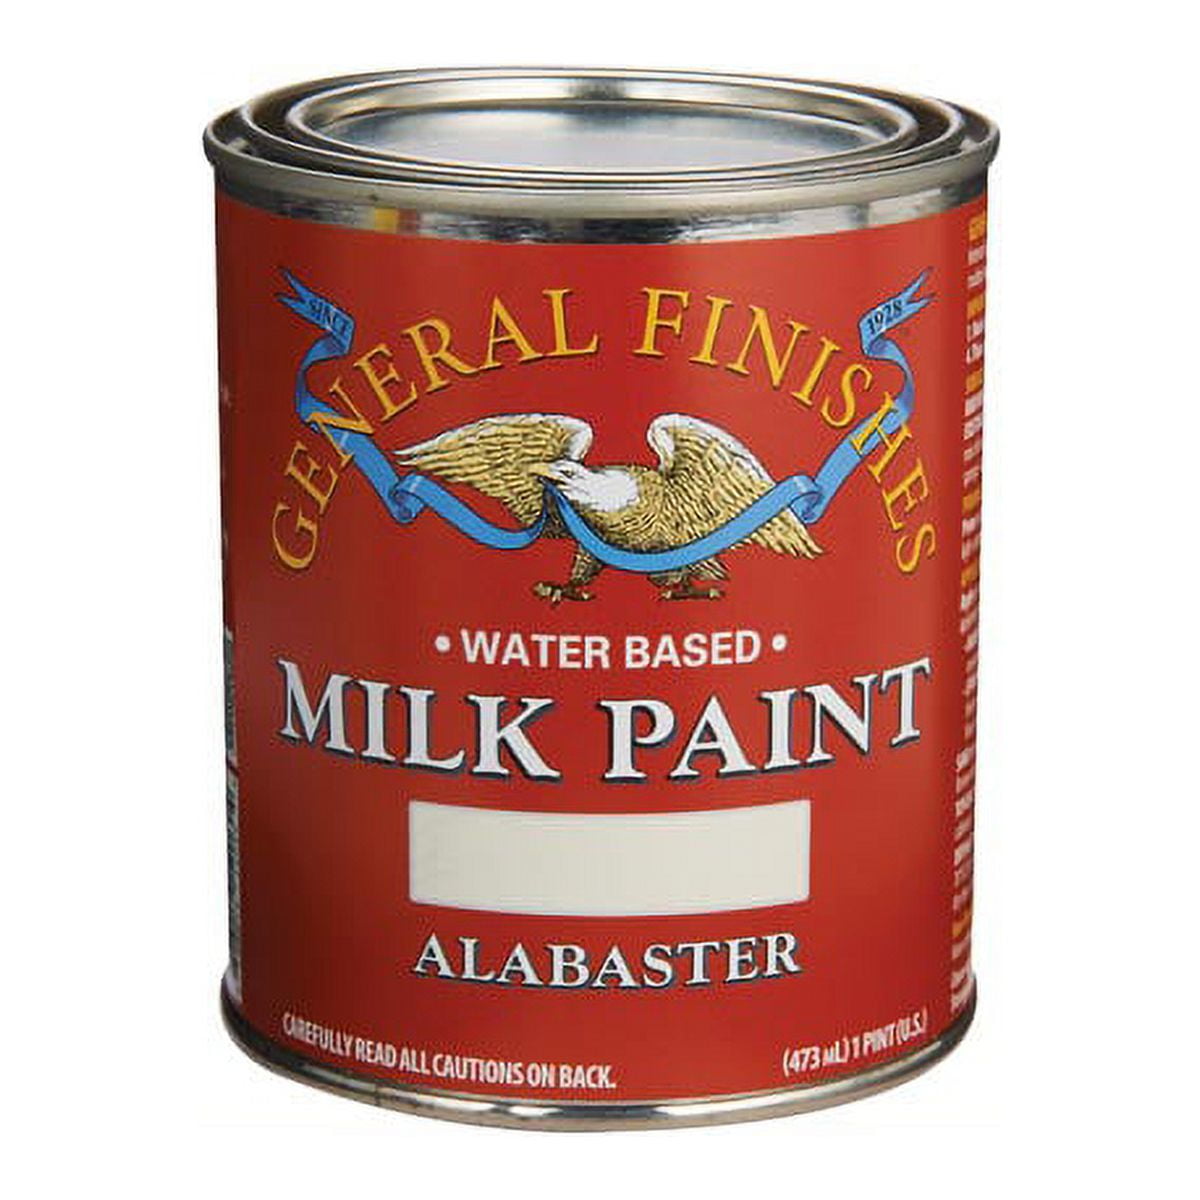 Real Milk Paint Dark Half - Gallon